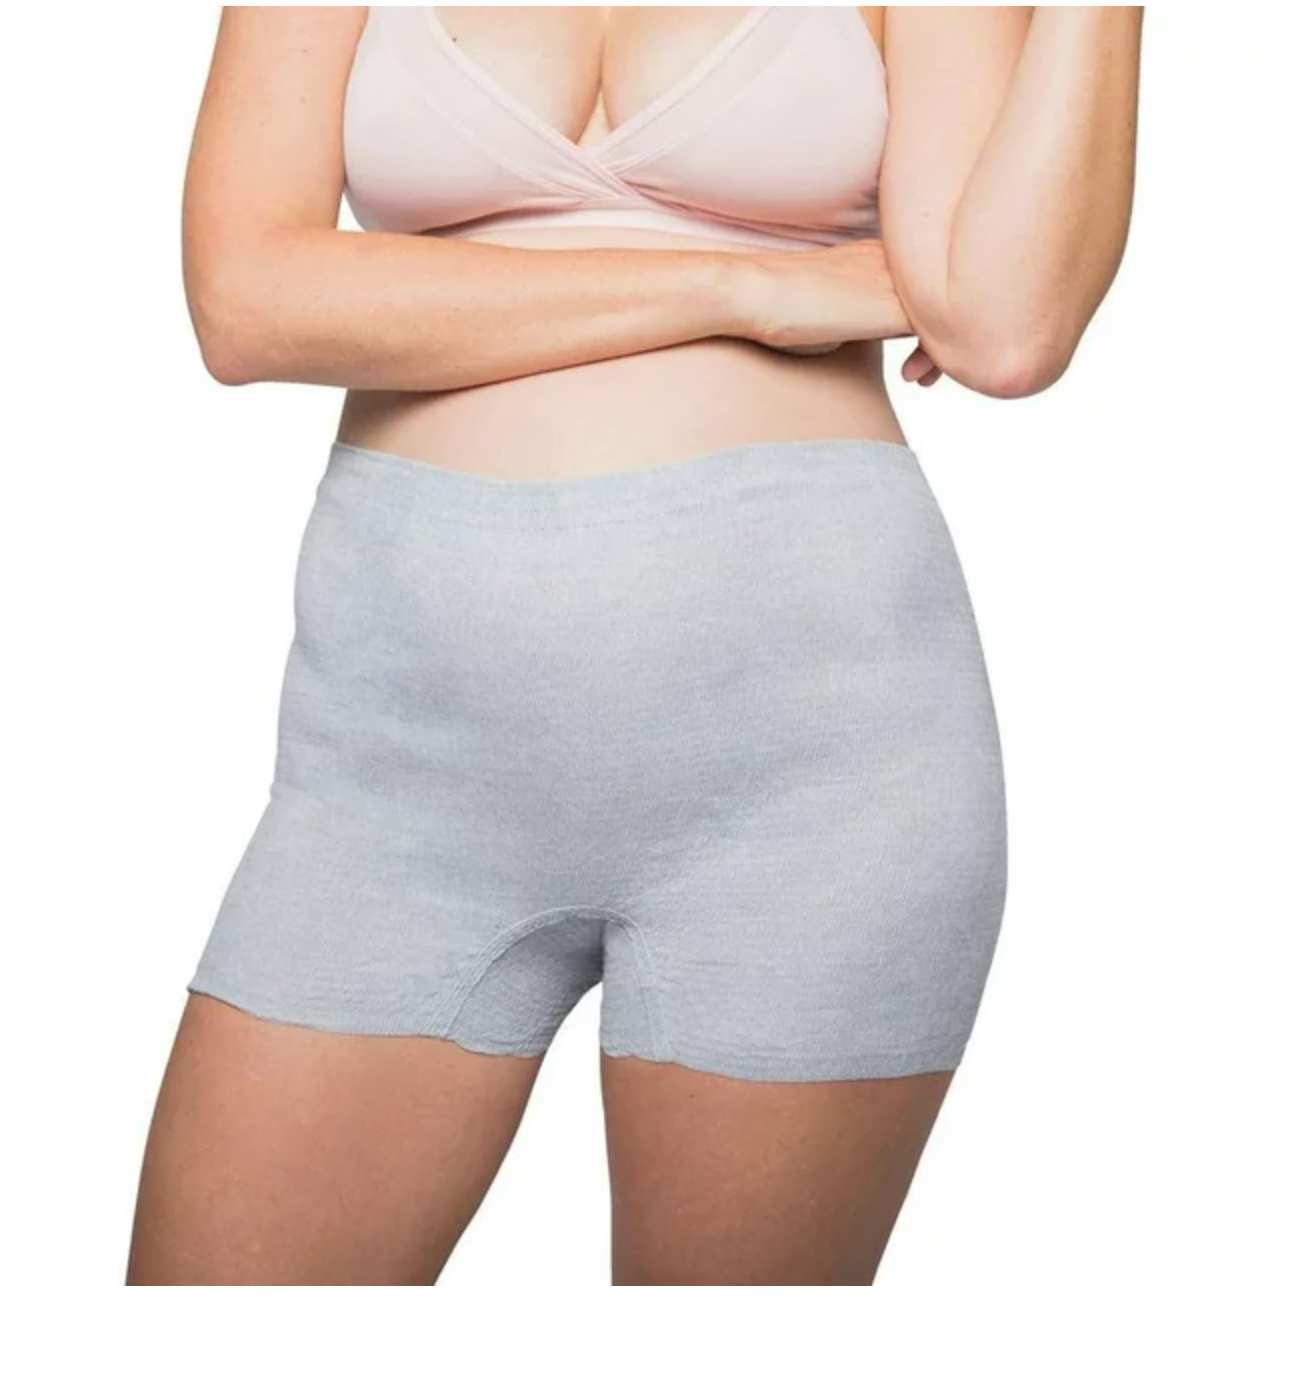 FridaMom Disposable Postpartum Underwear for Women